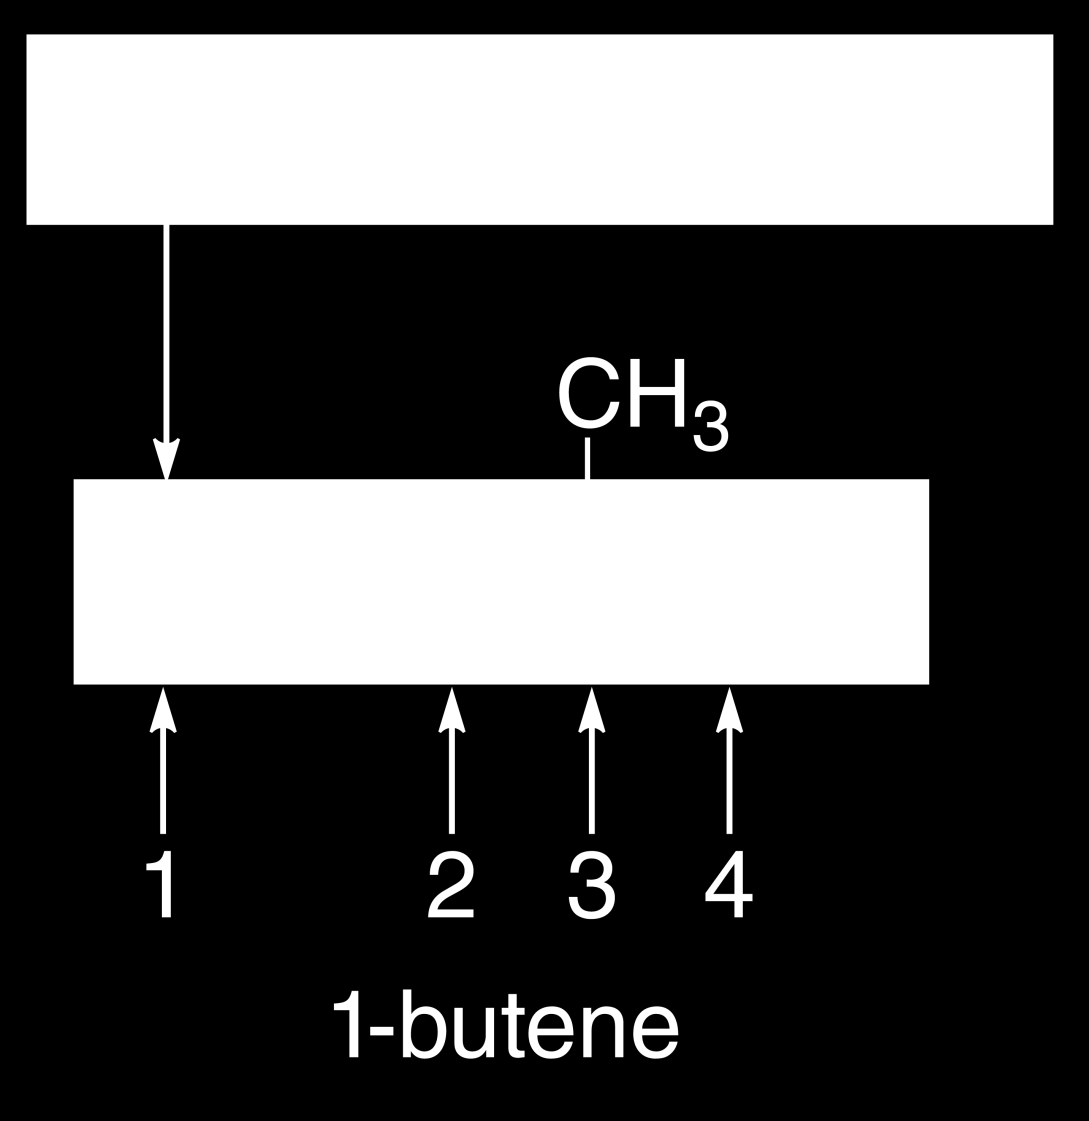 2 Çoklu bağına en düşük numarasını verecek şekilde karbon zinciri numaralandırılır. Her bir bileşik için, zinciri numaralandır ve bileşiği buna göre isimlendir.